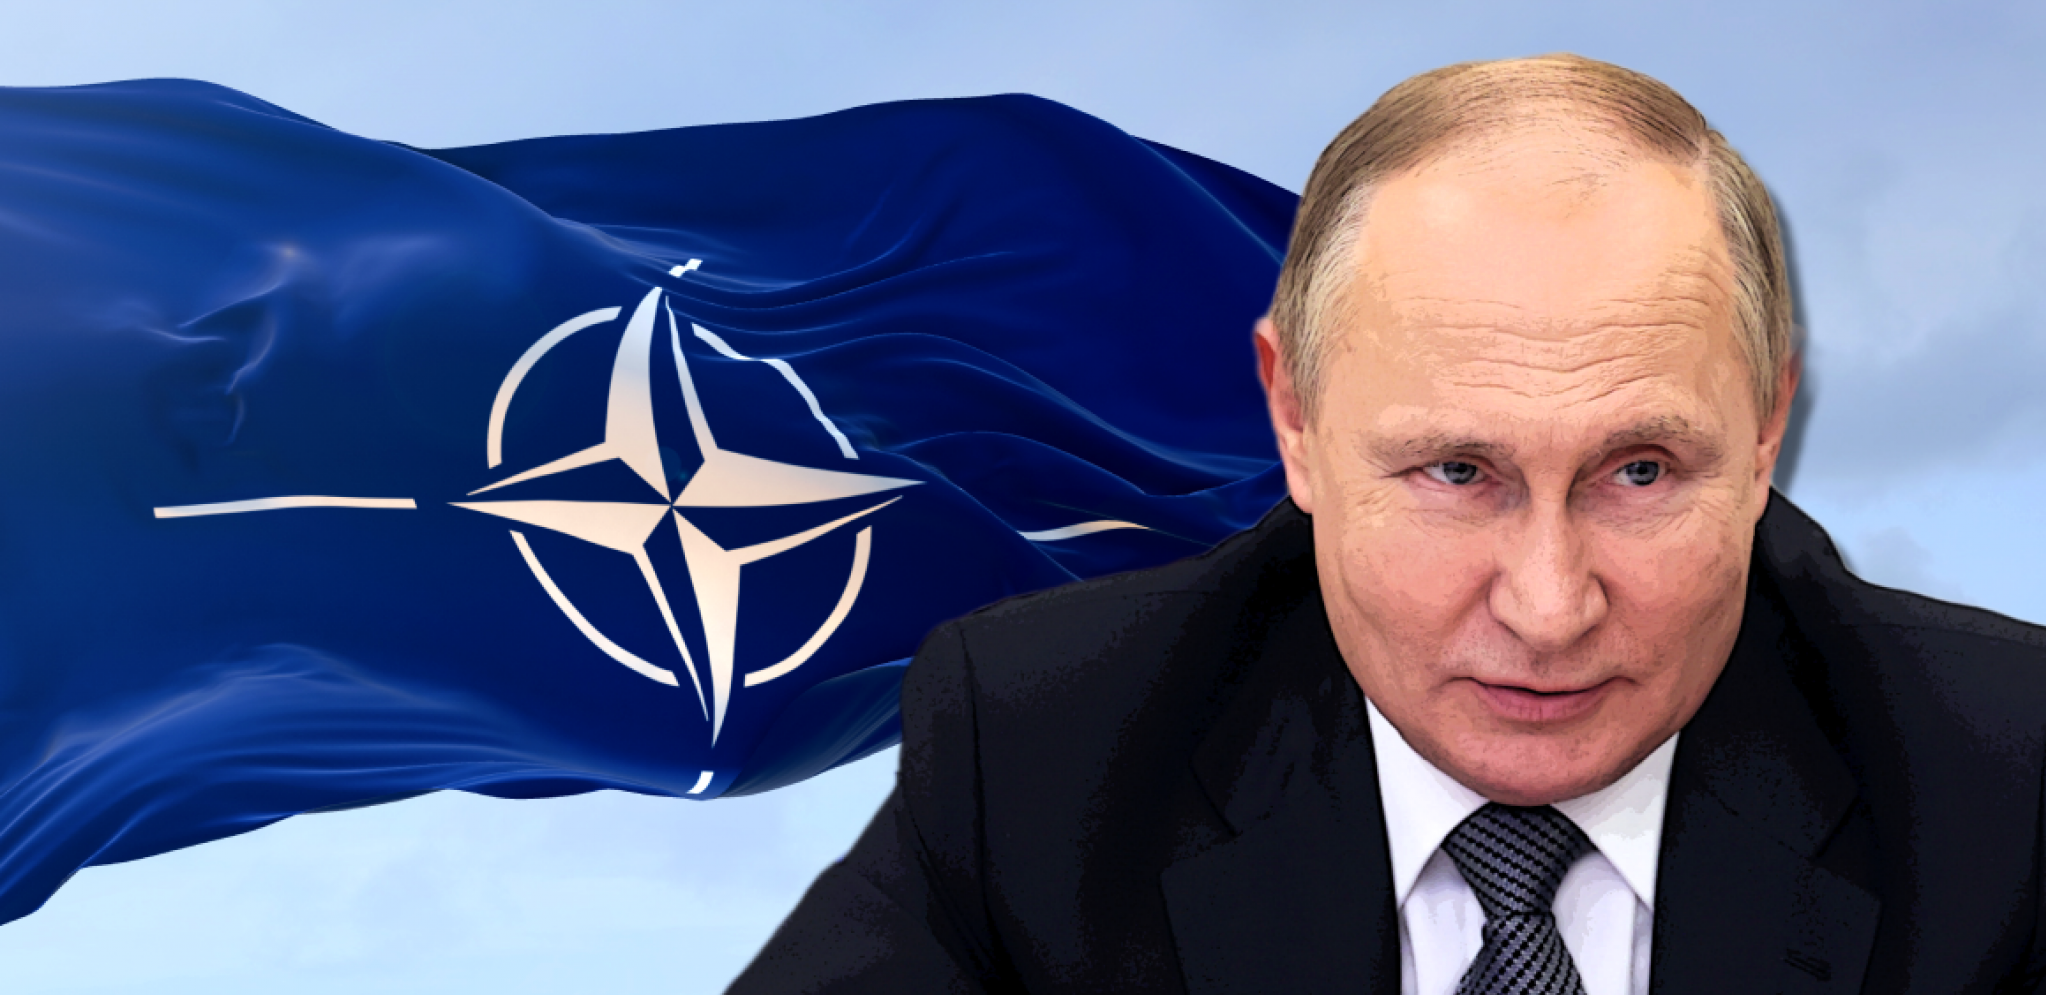 "NE MOŽEMO DOZVOLITI PUTINU DA POBEDI" NATO danas potpisao ugovor vvredan 1,2 milijarde dolara